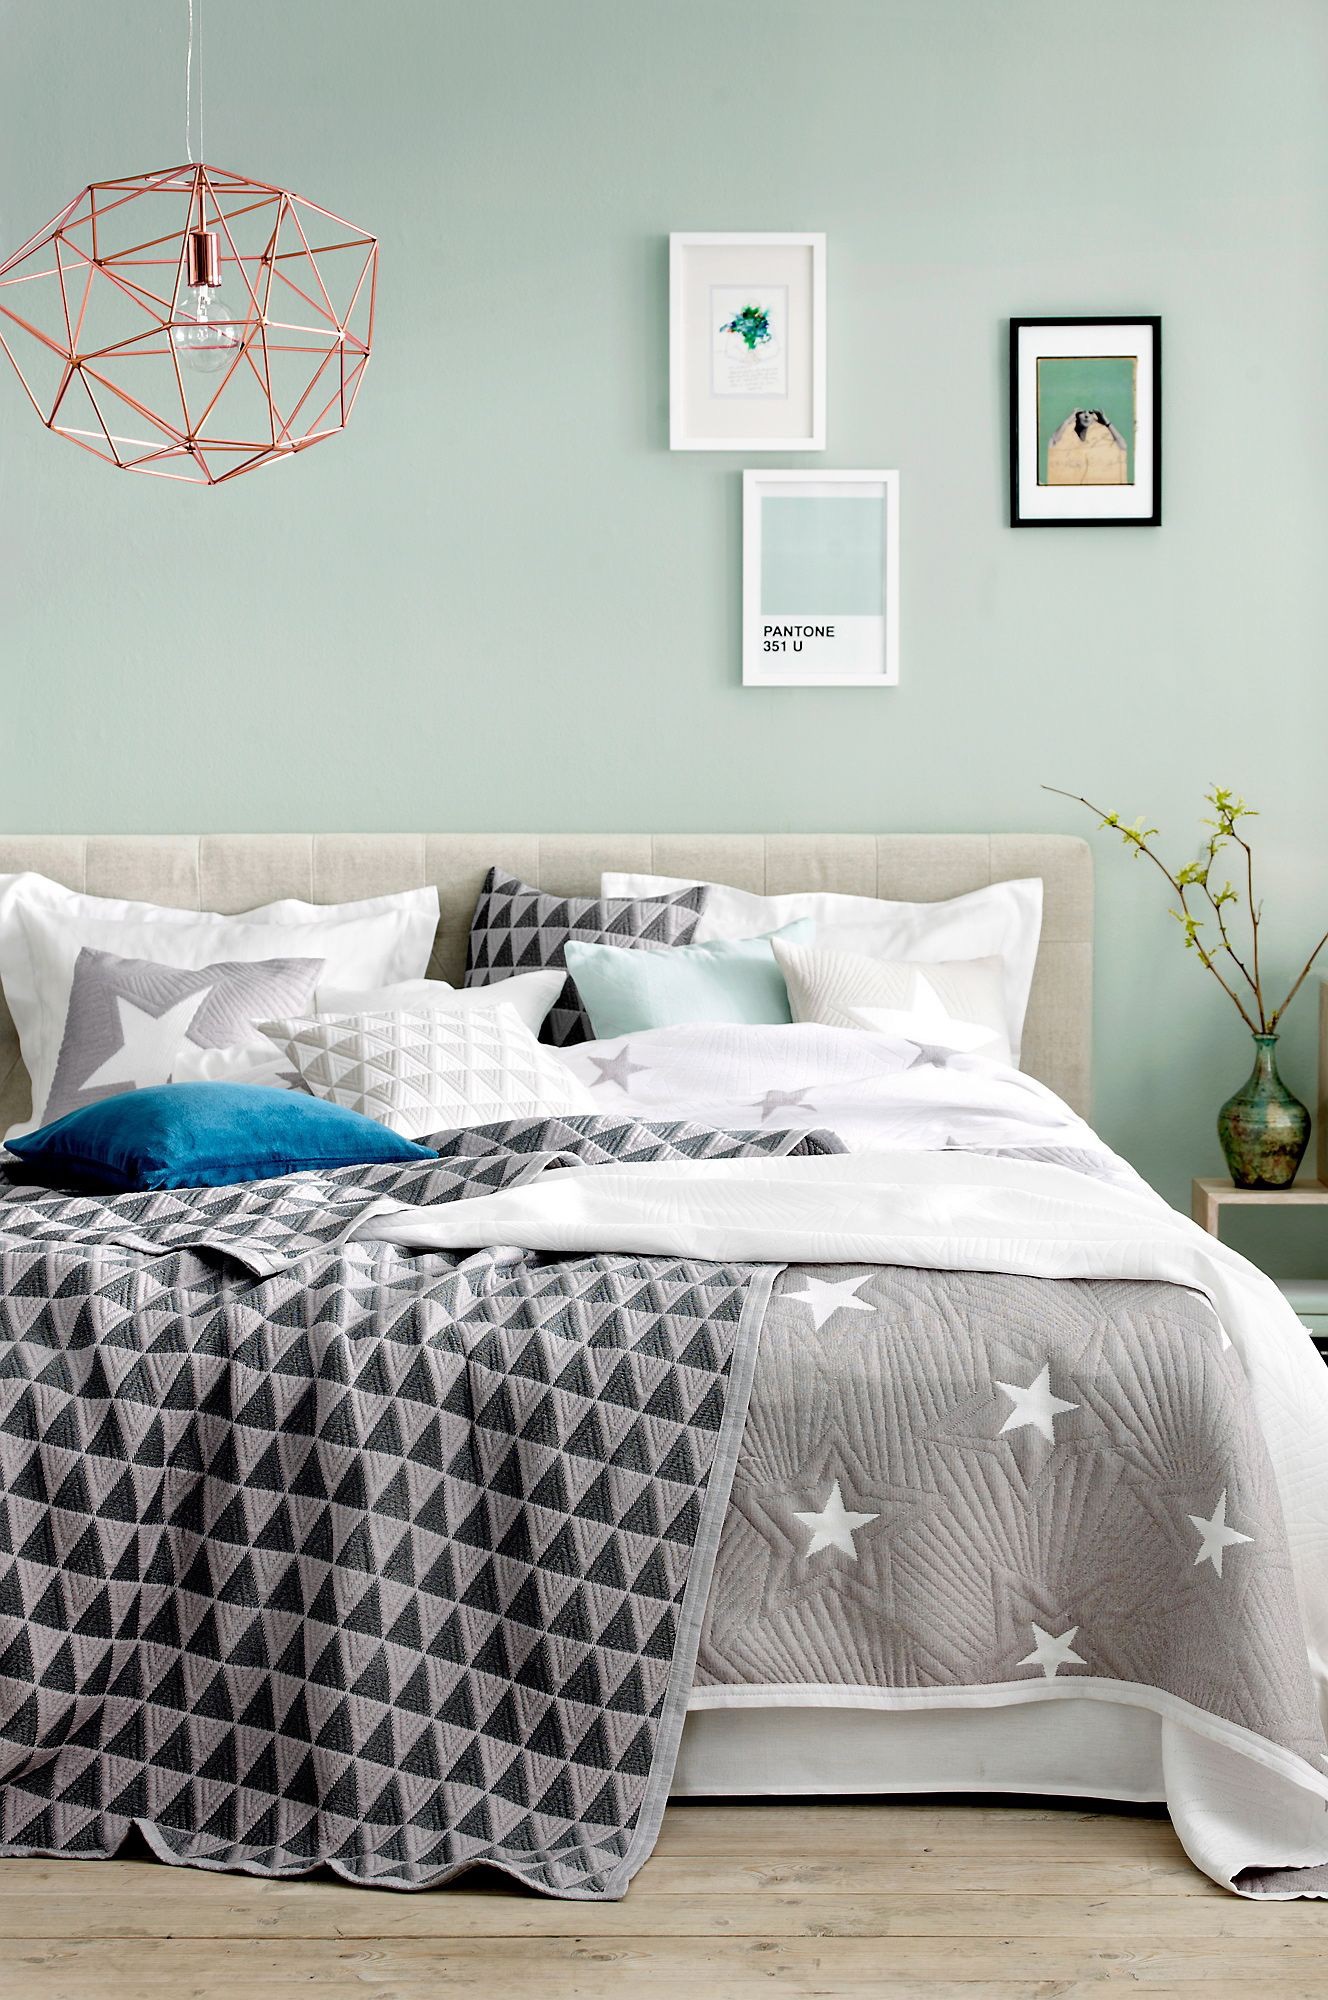  Phòng ngủ màu xanh bạc hà với các loại vải hiện đại.